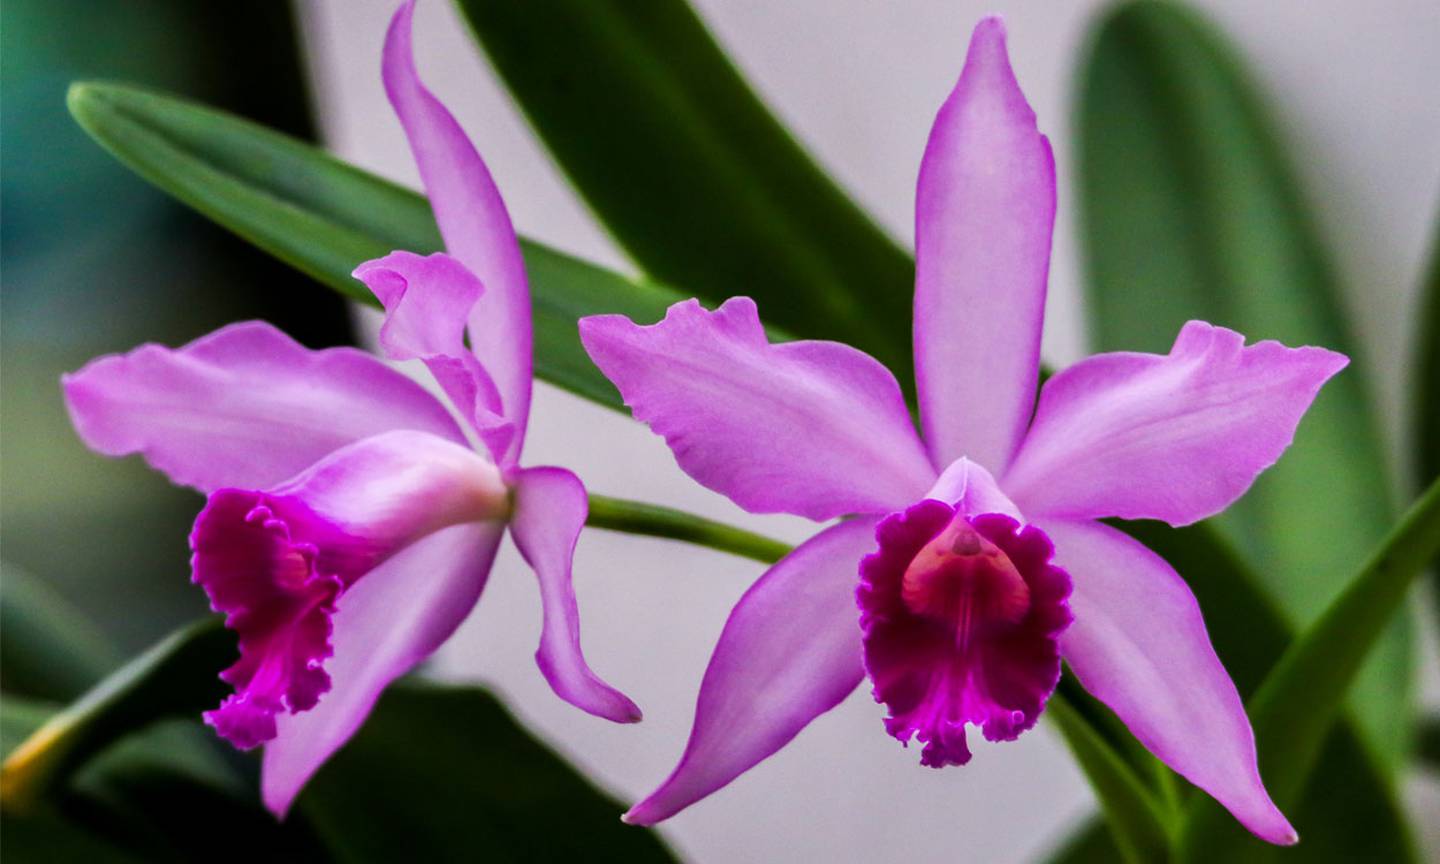 Dos orquídeas Cattleya de color morado.